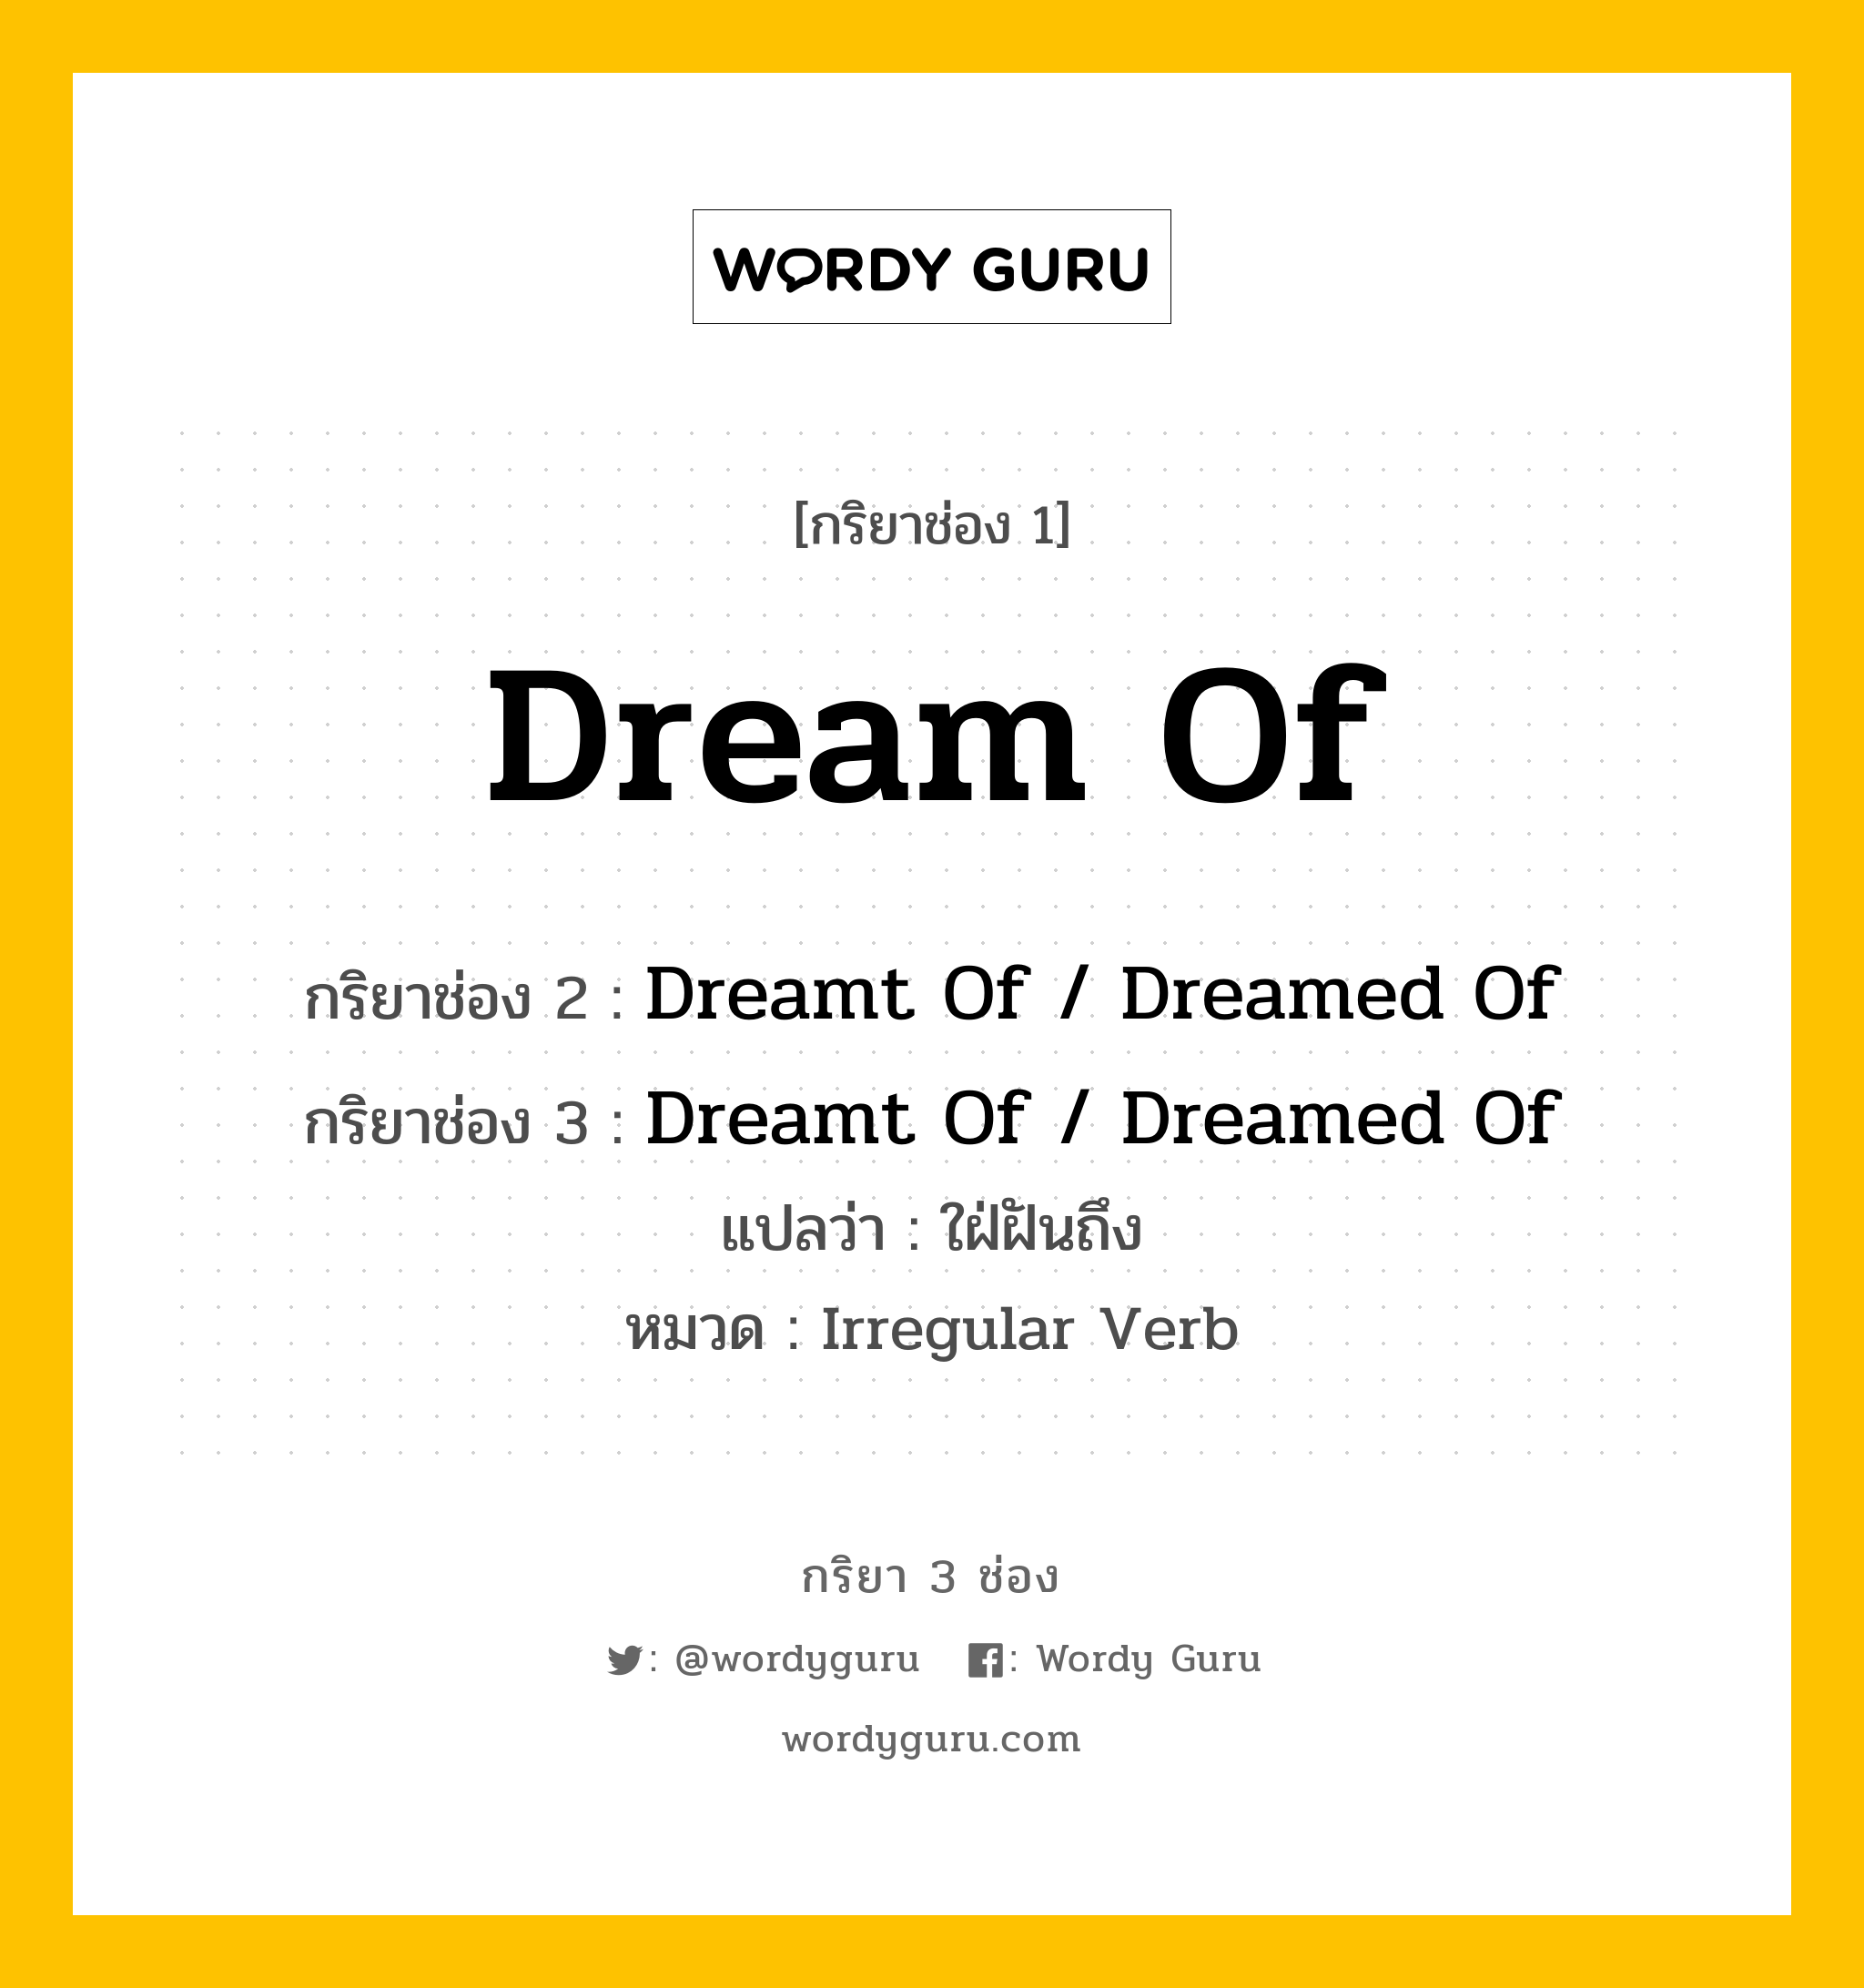 กริยา 3 ช่อง: Dream Of ช่อง 2 Dream Of ช่อง 3 คืออะไร, กริยาช่อง 1 Dream Of กริยาช่อง 2 Dreamt Of / Dreamed Of กริยาช่อง 3 Dreamt Of / Dreamed Of แปลว่า ใฝ่ฝันถึง หมวด Irregular Verb หมวด Irregular Verb